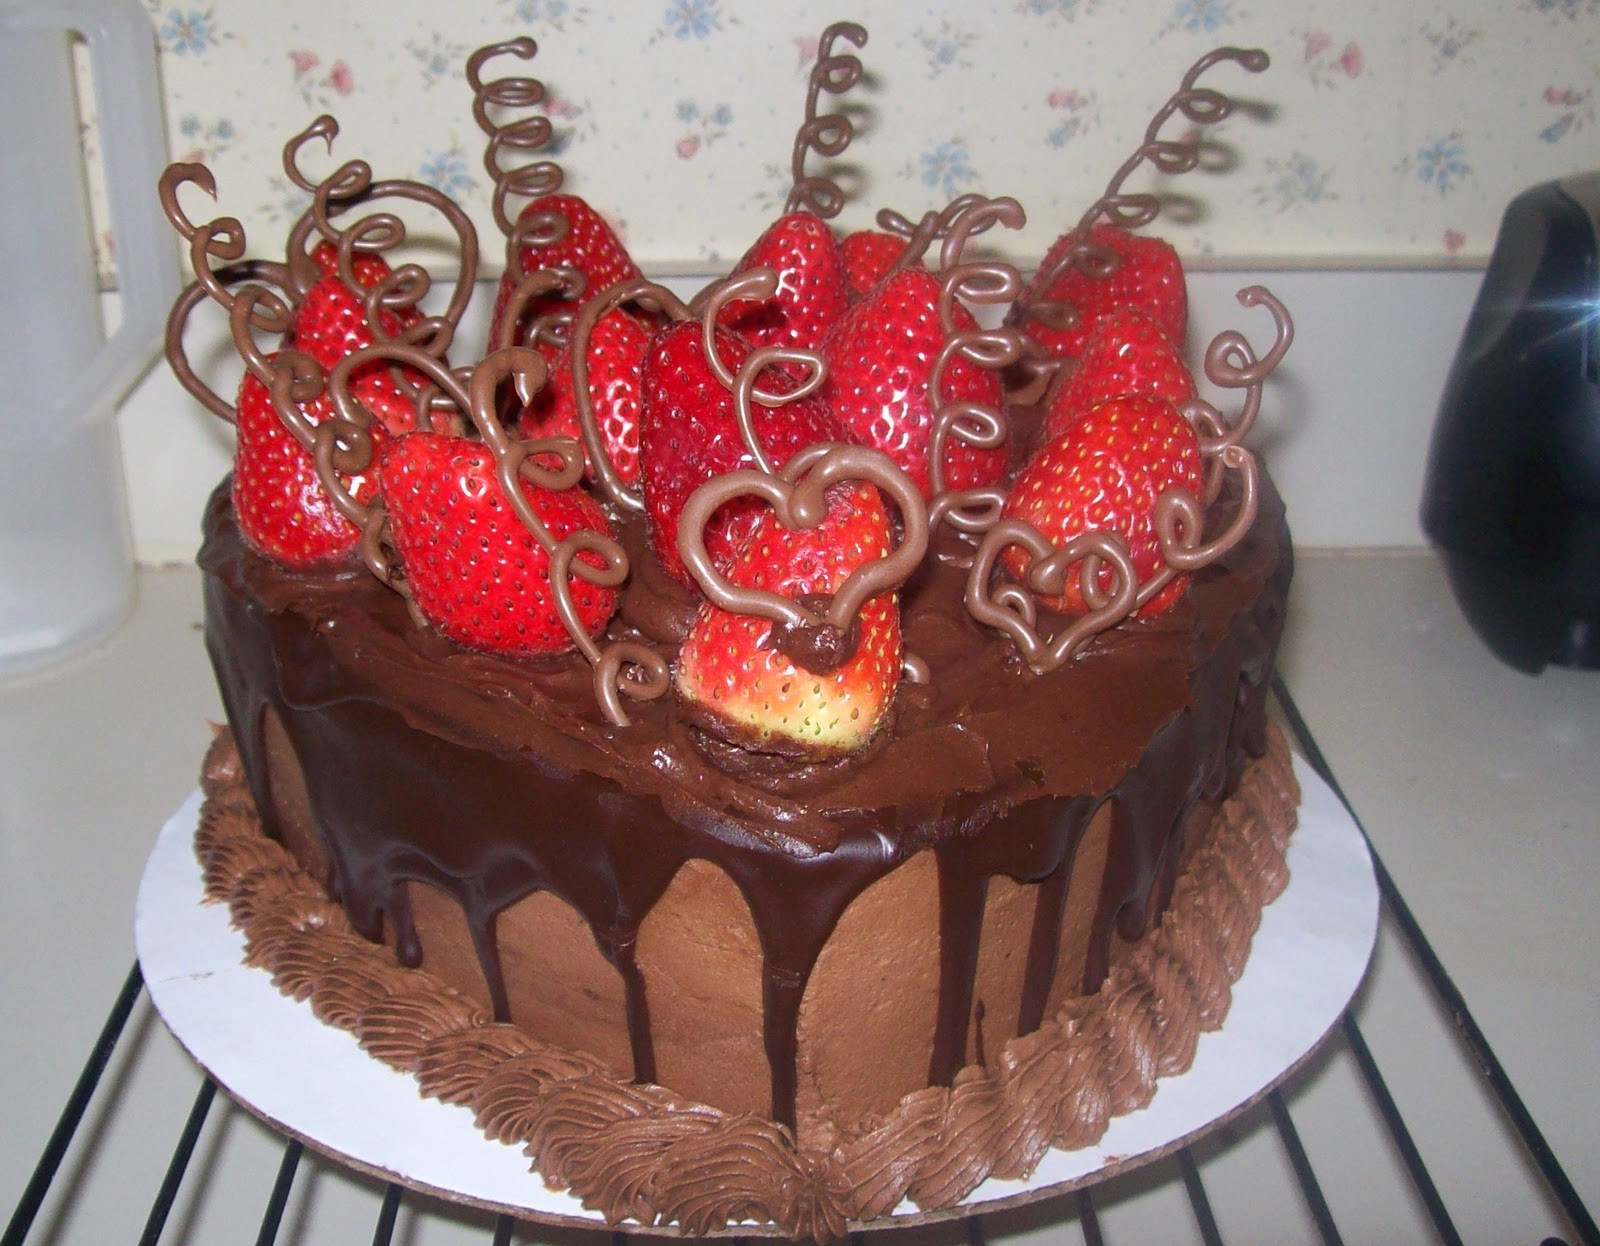 Chocolate Cake With Strawberries
 My Amazing Things Blog Cake with chocolate and strawberry